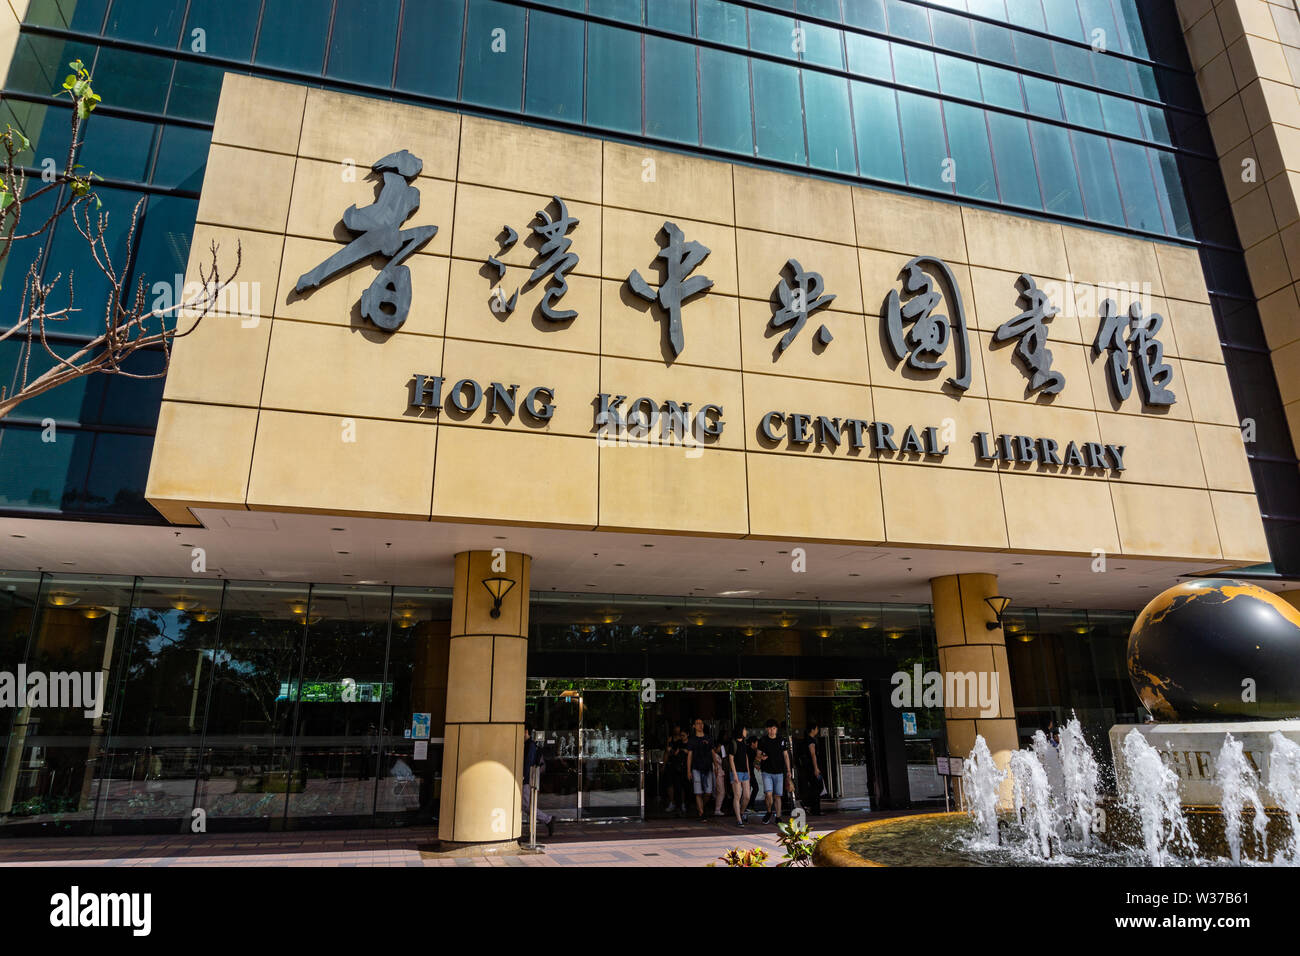 Facade exterior of Hong Kong Central Library Stock Photo